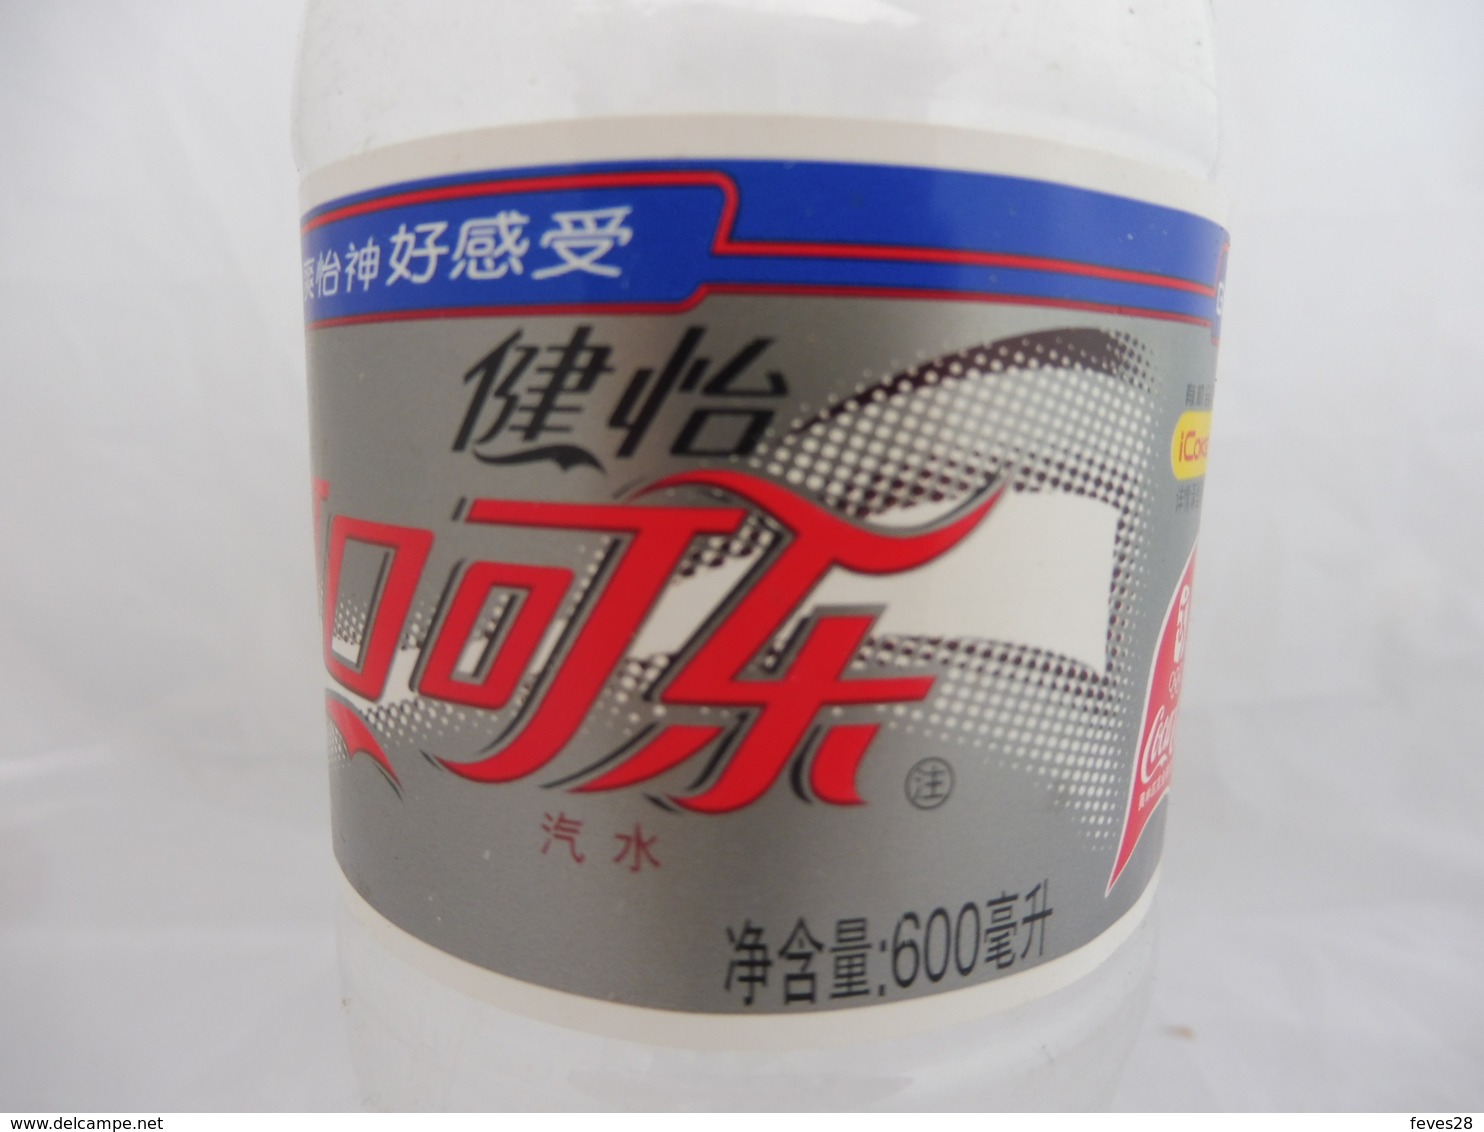 COCA COLA® LIGHT BOUTEILLE PLASTIQUE VIDE 2007 CHINE 0.6L - Botellas